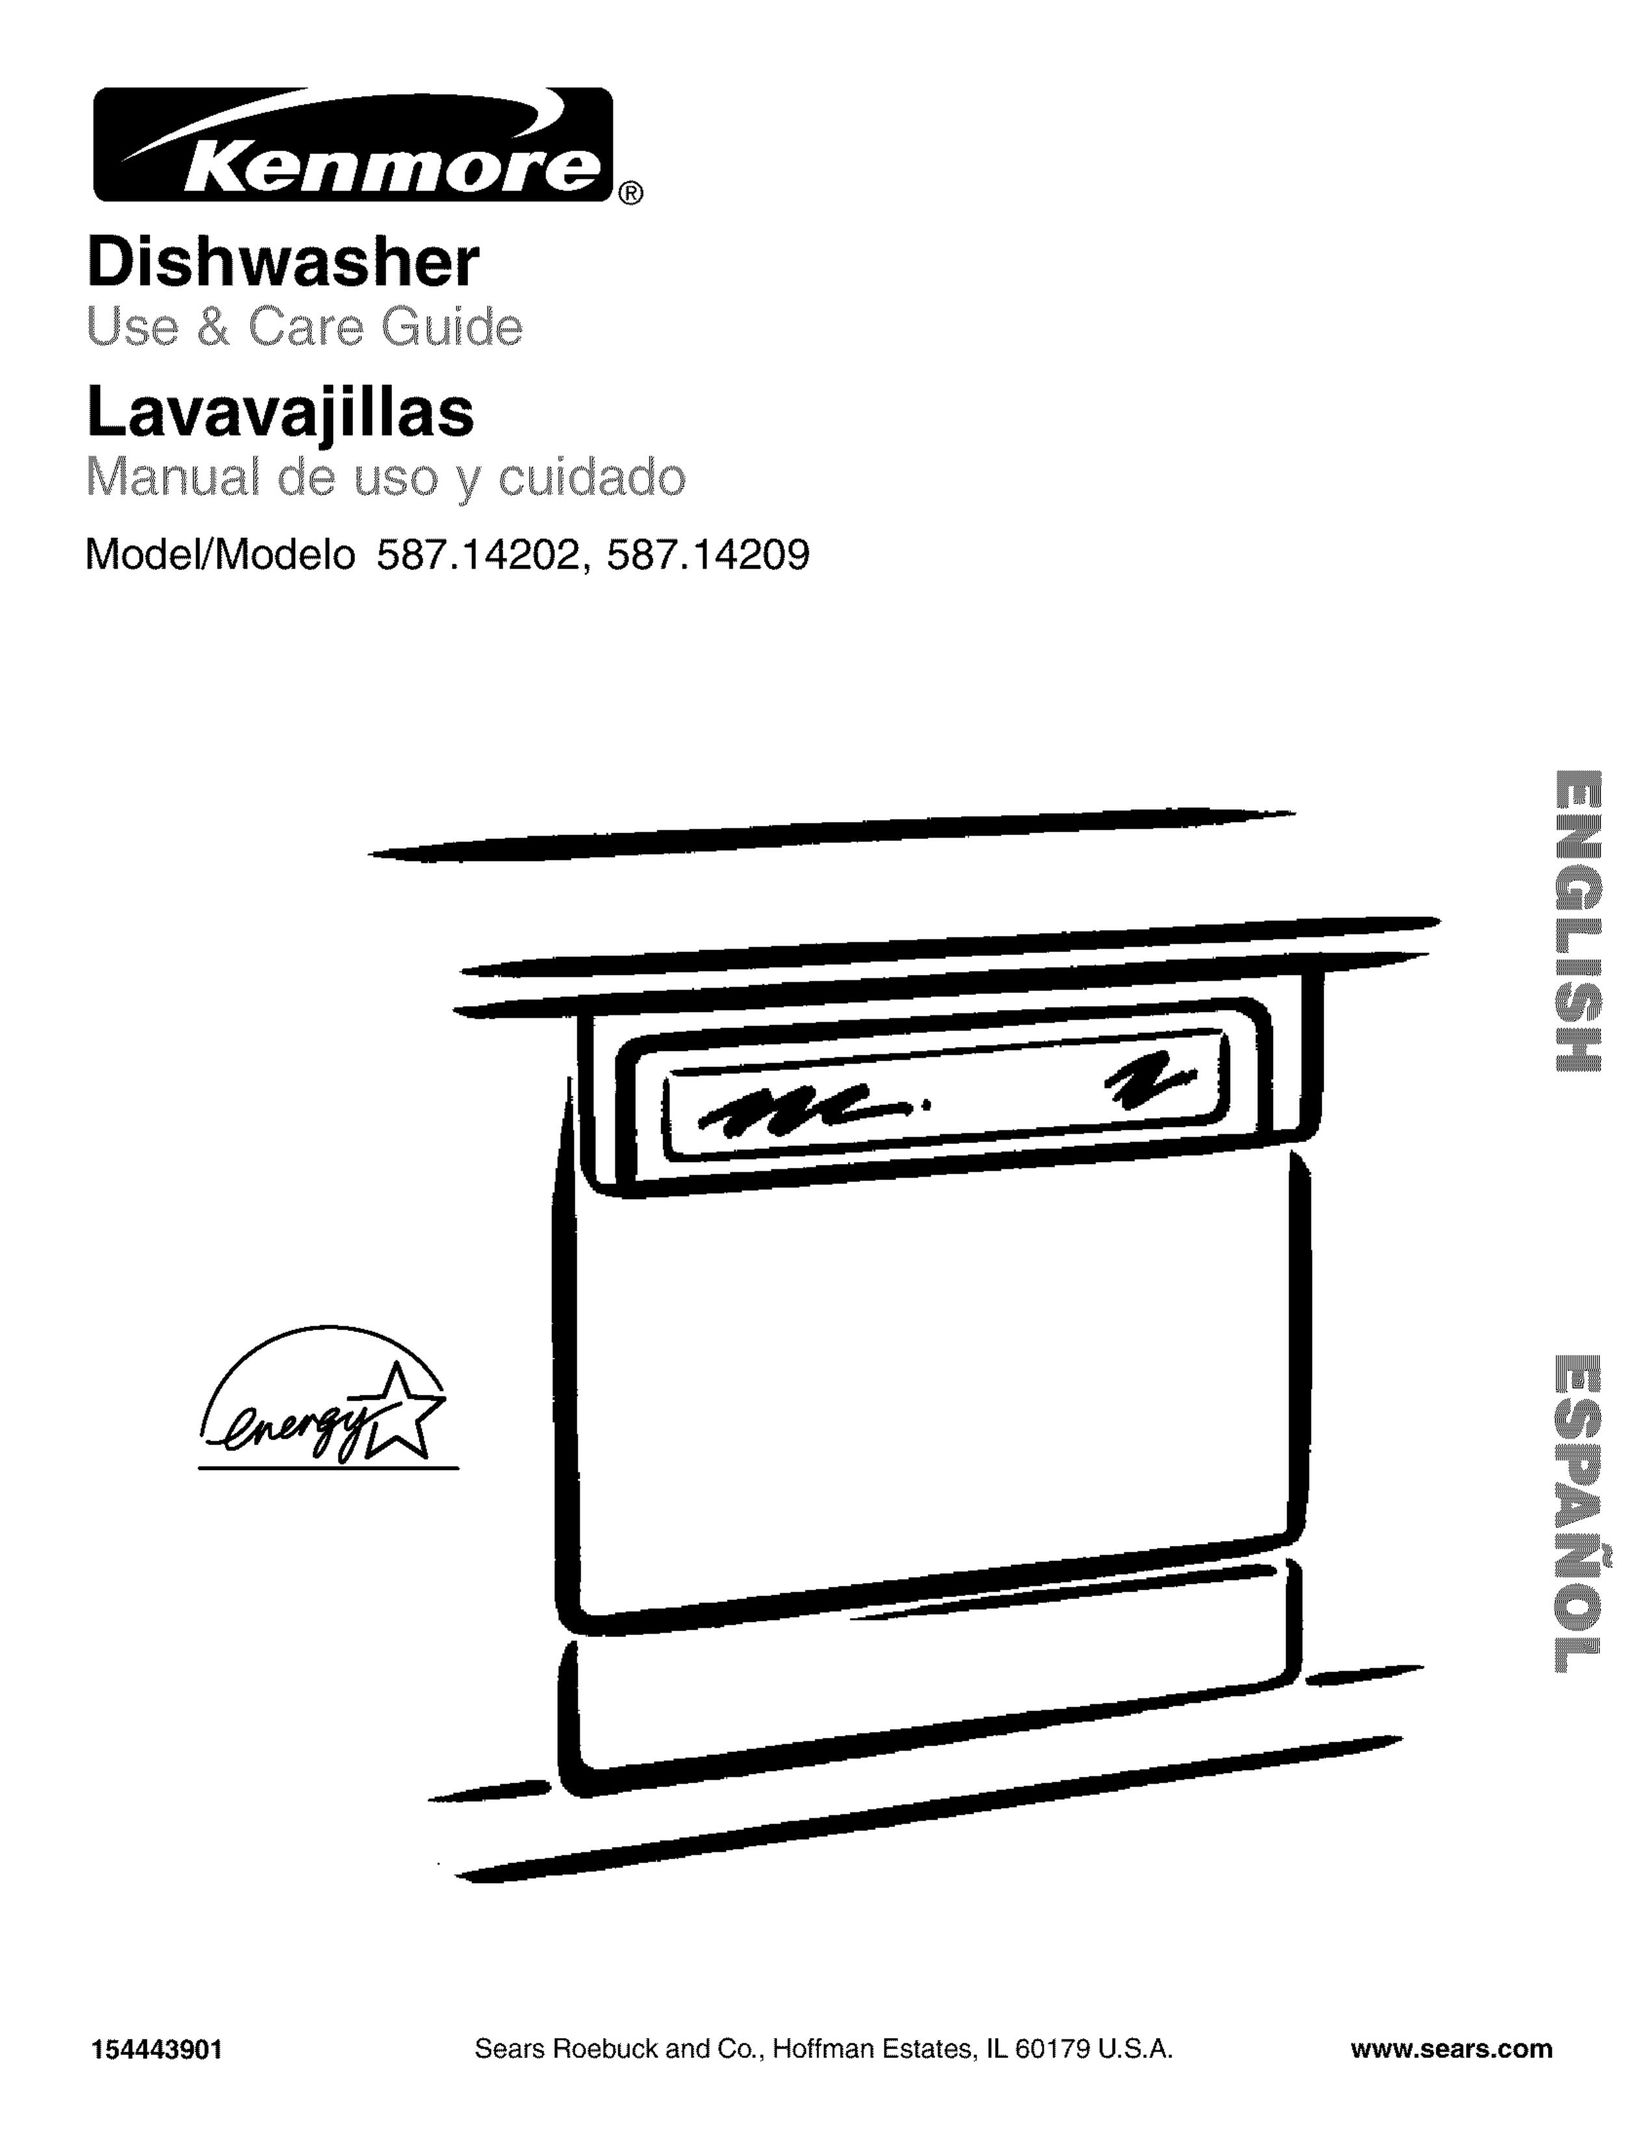 Kenmore 587.14209 Dishwasher User Manual